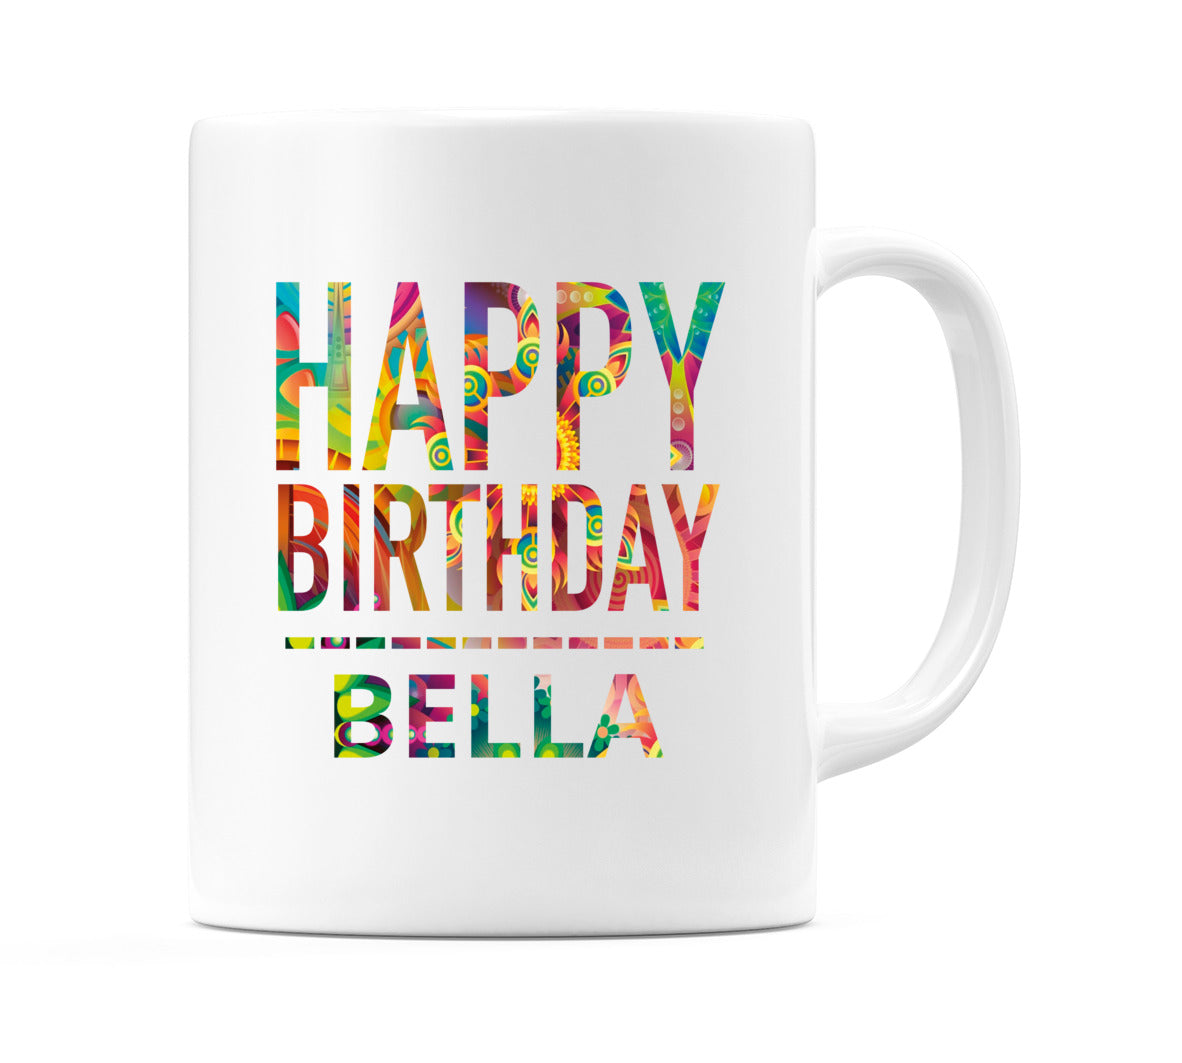 Happy Birthday Bella (Tie Dye Effect) Mug Cup by WeDoMugs